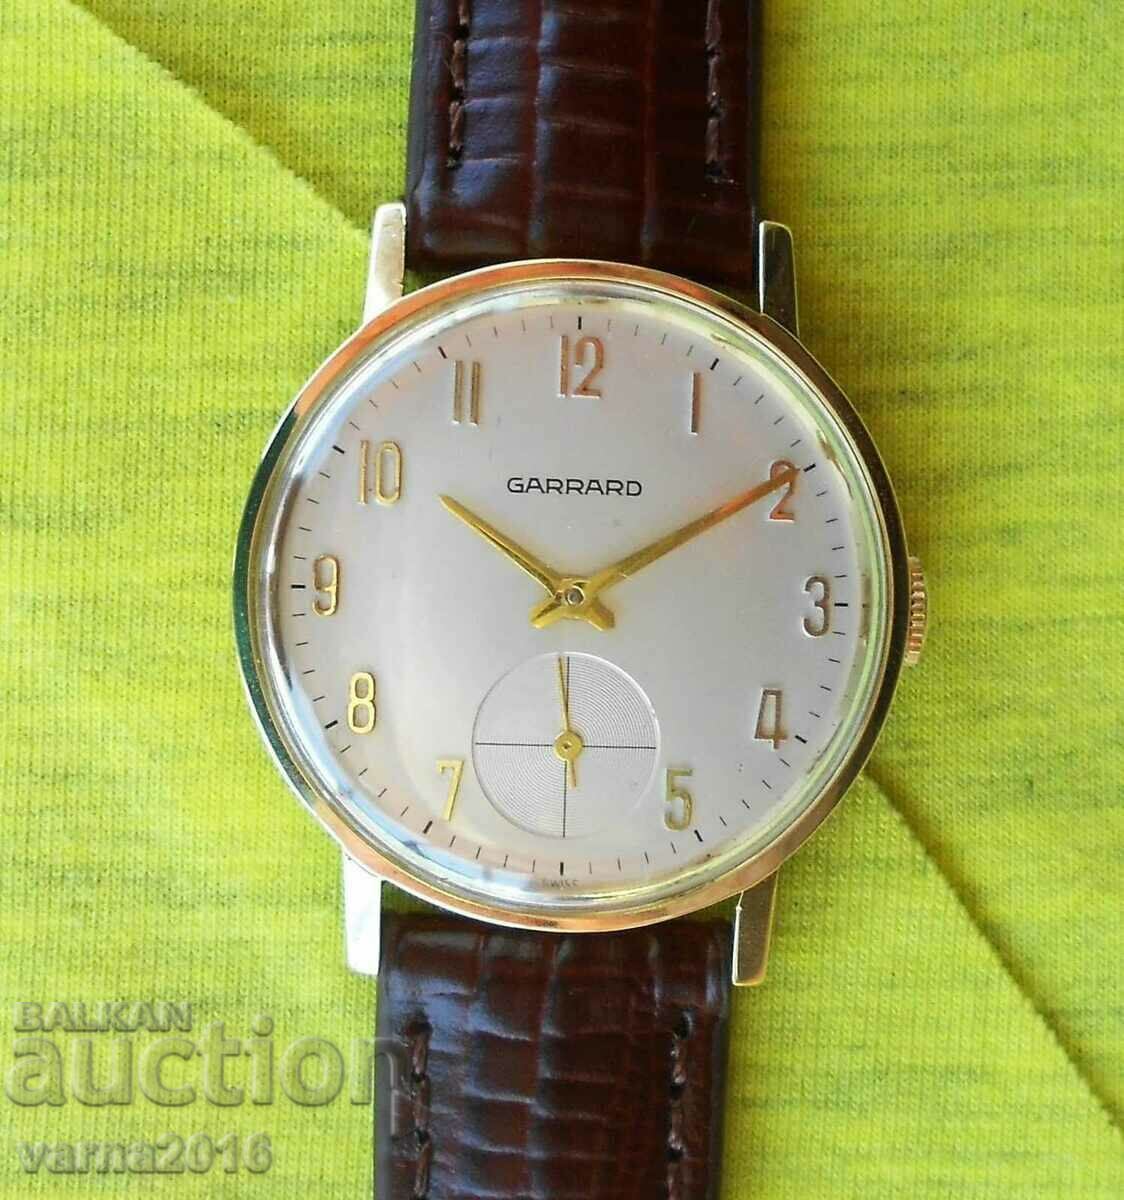 Garrard Swiss Mechanical Watch